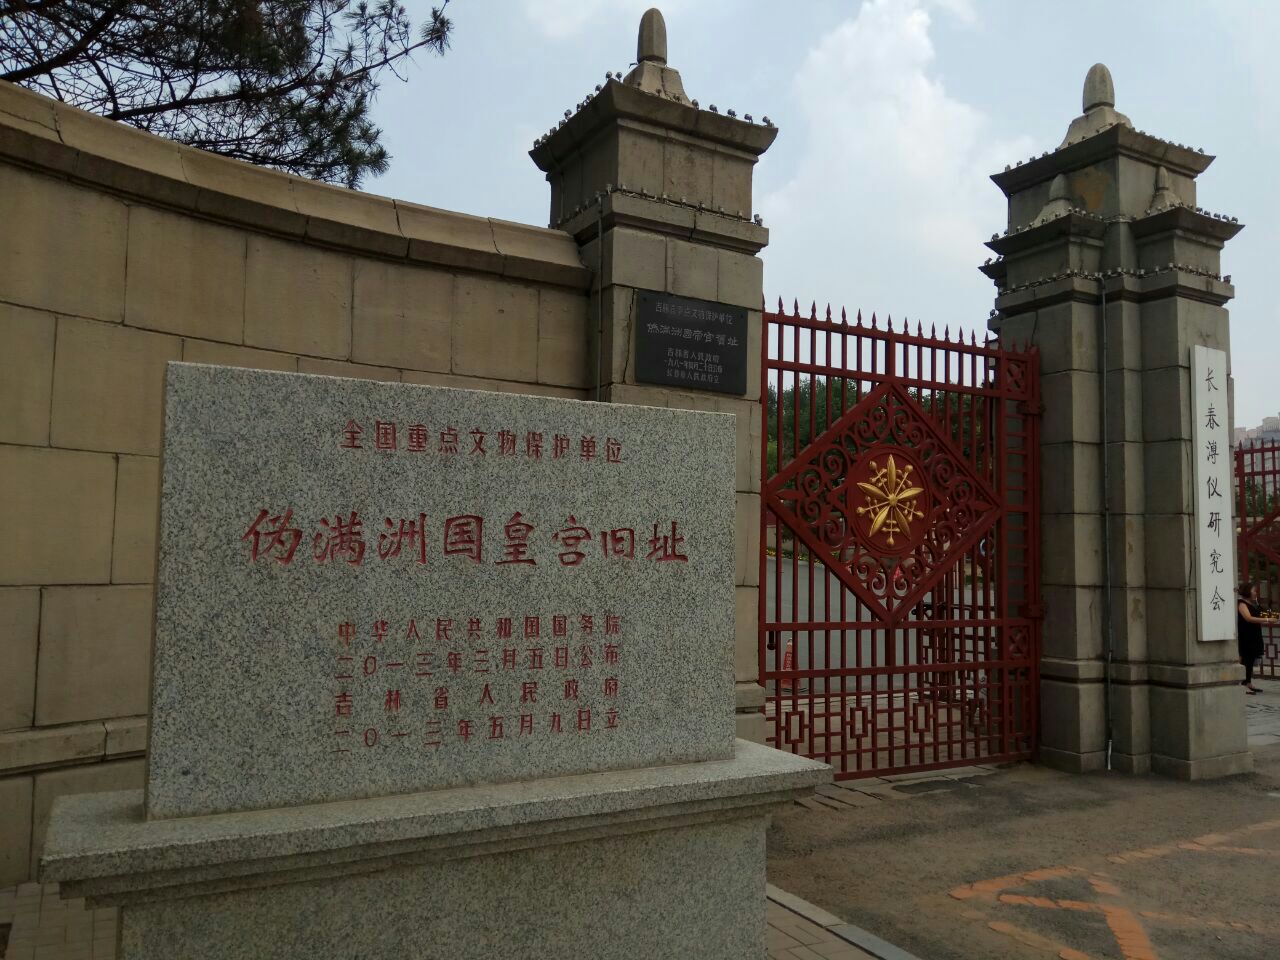 伪满皇宫博物馆不错,景区挺大的,值得看,是中国